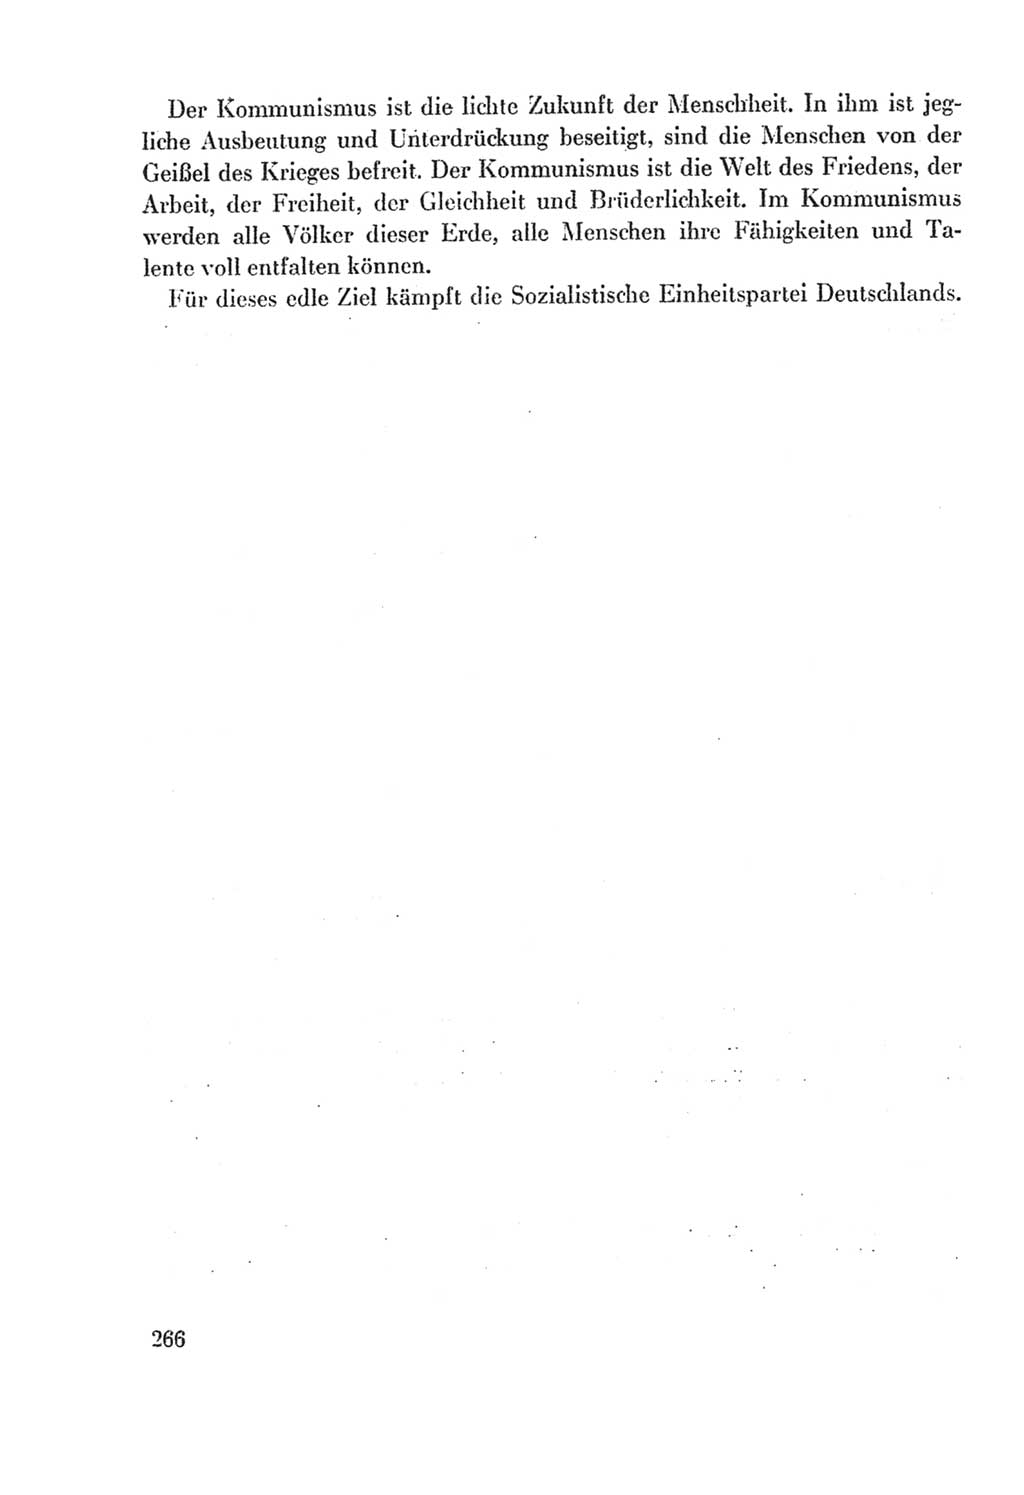 Protokoll der Verhandlungen des Ⅸ. Parteitages der Sozialistischen Einheitspartei Deutschlands (SED) [Deutsche Demokratische Republik (DDR)] 1976, Band 2, Seite 266 (Prot. Verh. Ⅸ. PT SED DDR 1976, Bd. 2, S. 266)